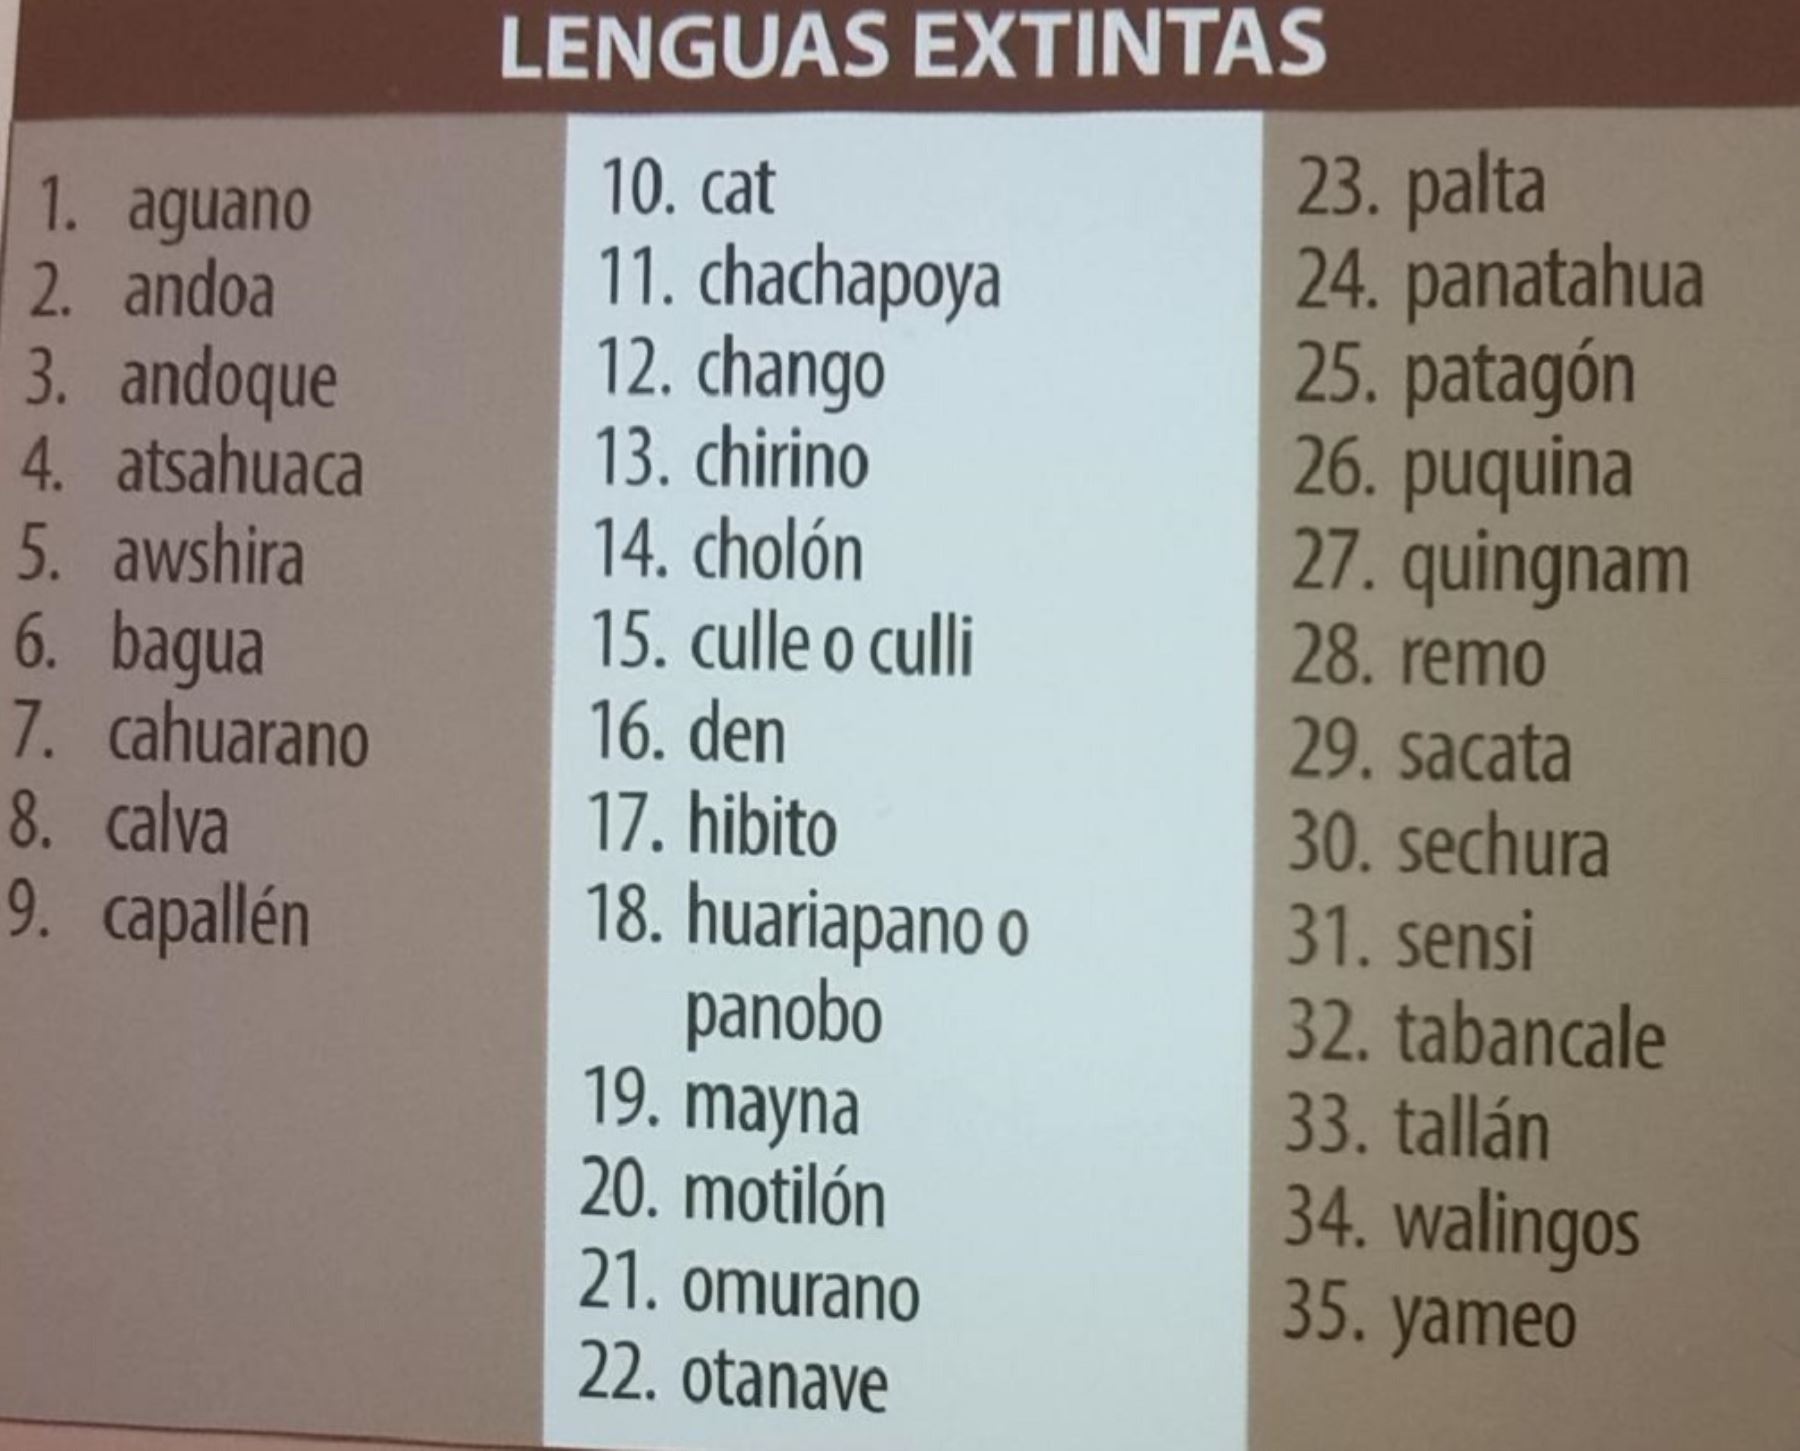 Lenguas extintas en el Perú.